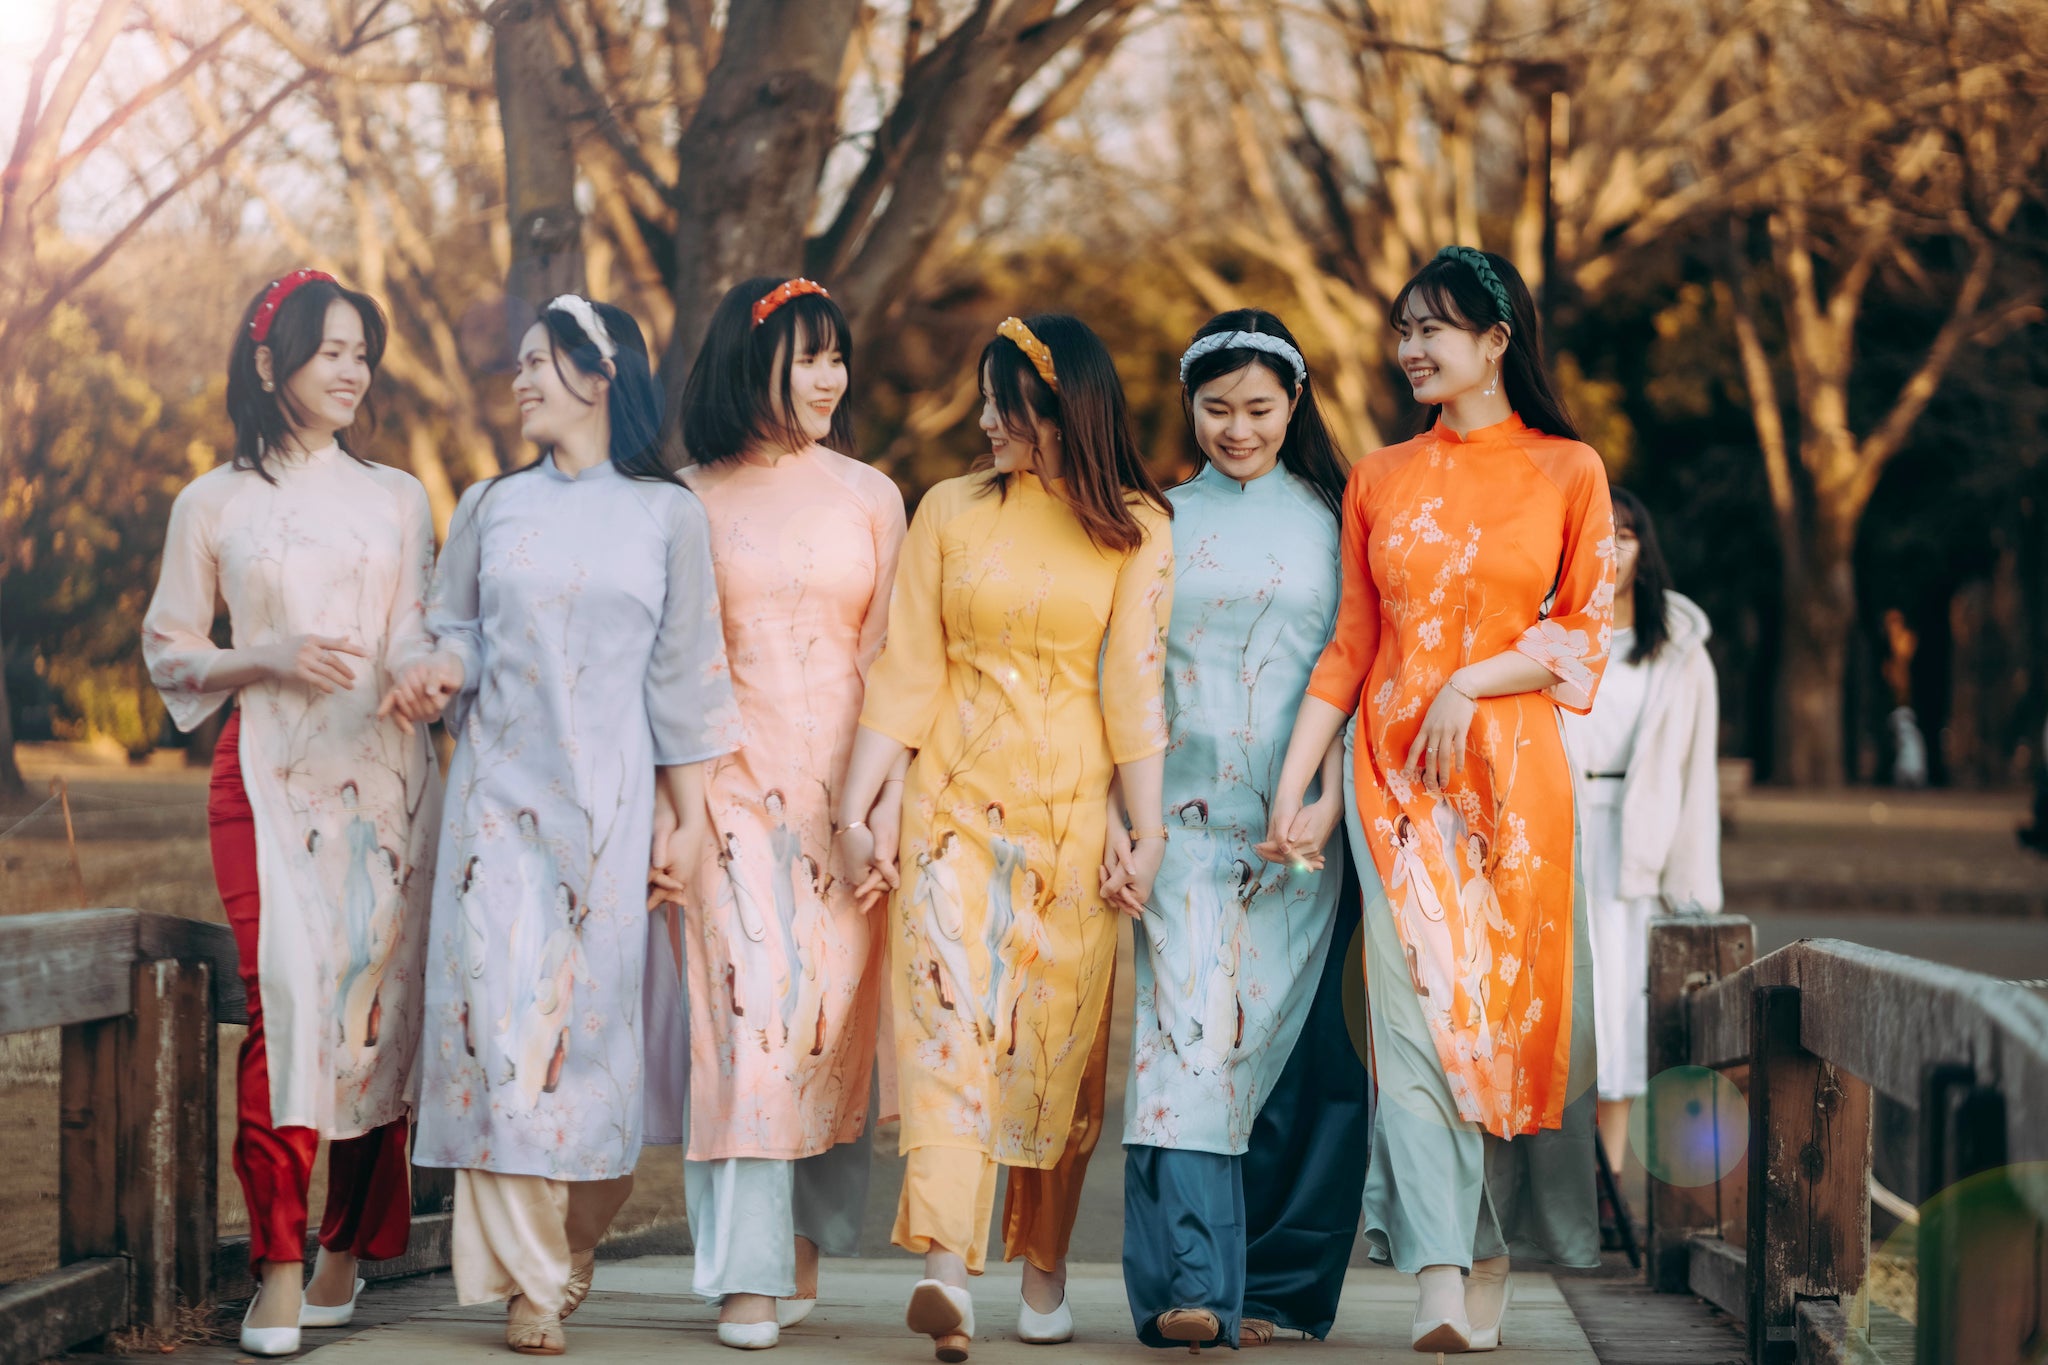 QUẢNG CÁO NỮ - ÁO ĐẠI THÀNH SƯƠNG Áo dài trang phục dân tộc Việt Nam (Không kèm quần) 